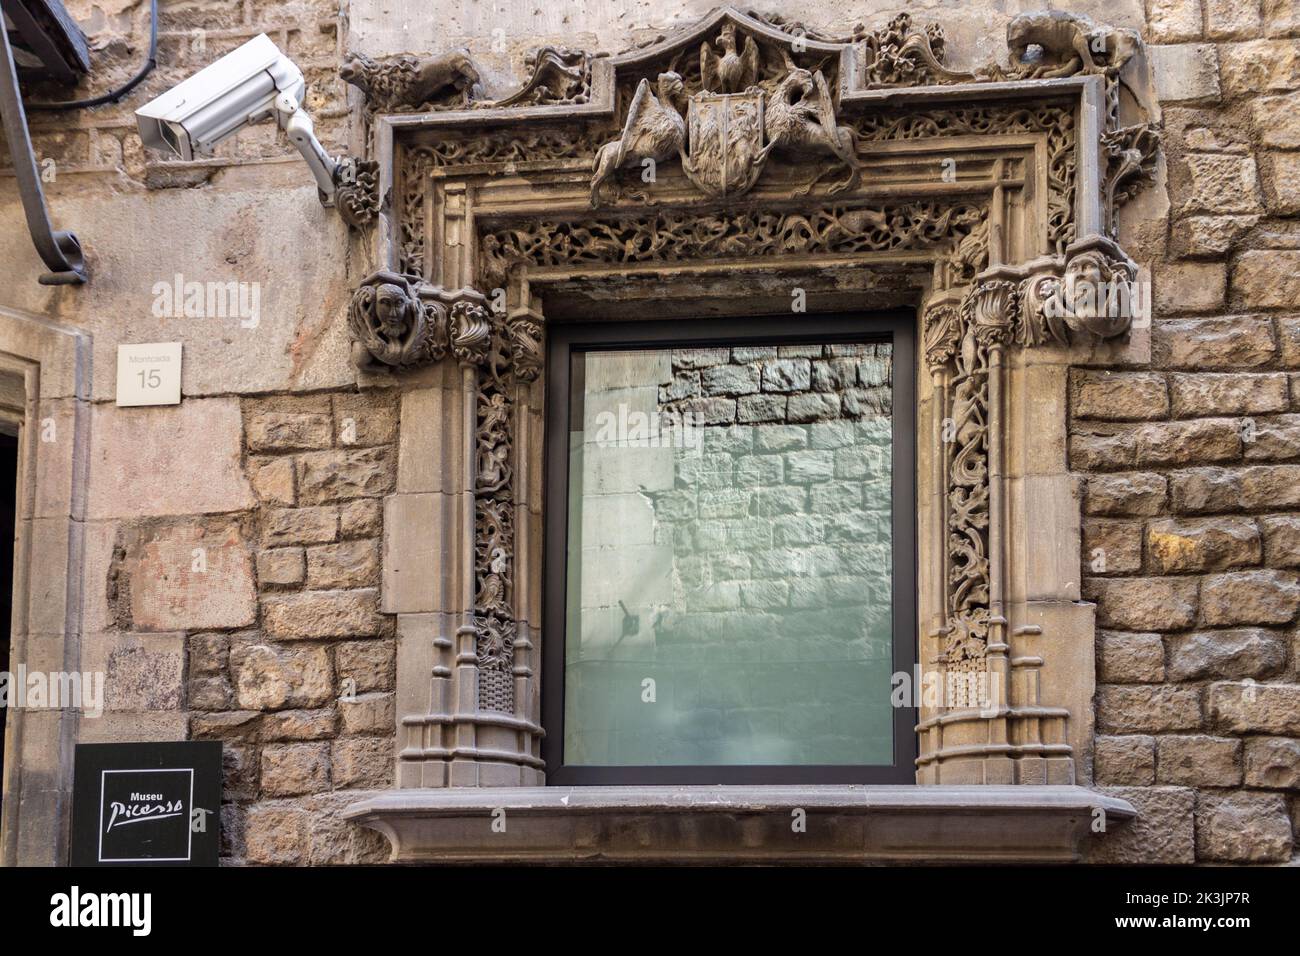 Le détail au-dessus d'une fenêtre sur le mur en pierre du musée Picasso à Barcelone, Espagne Banque D'Images